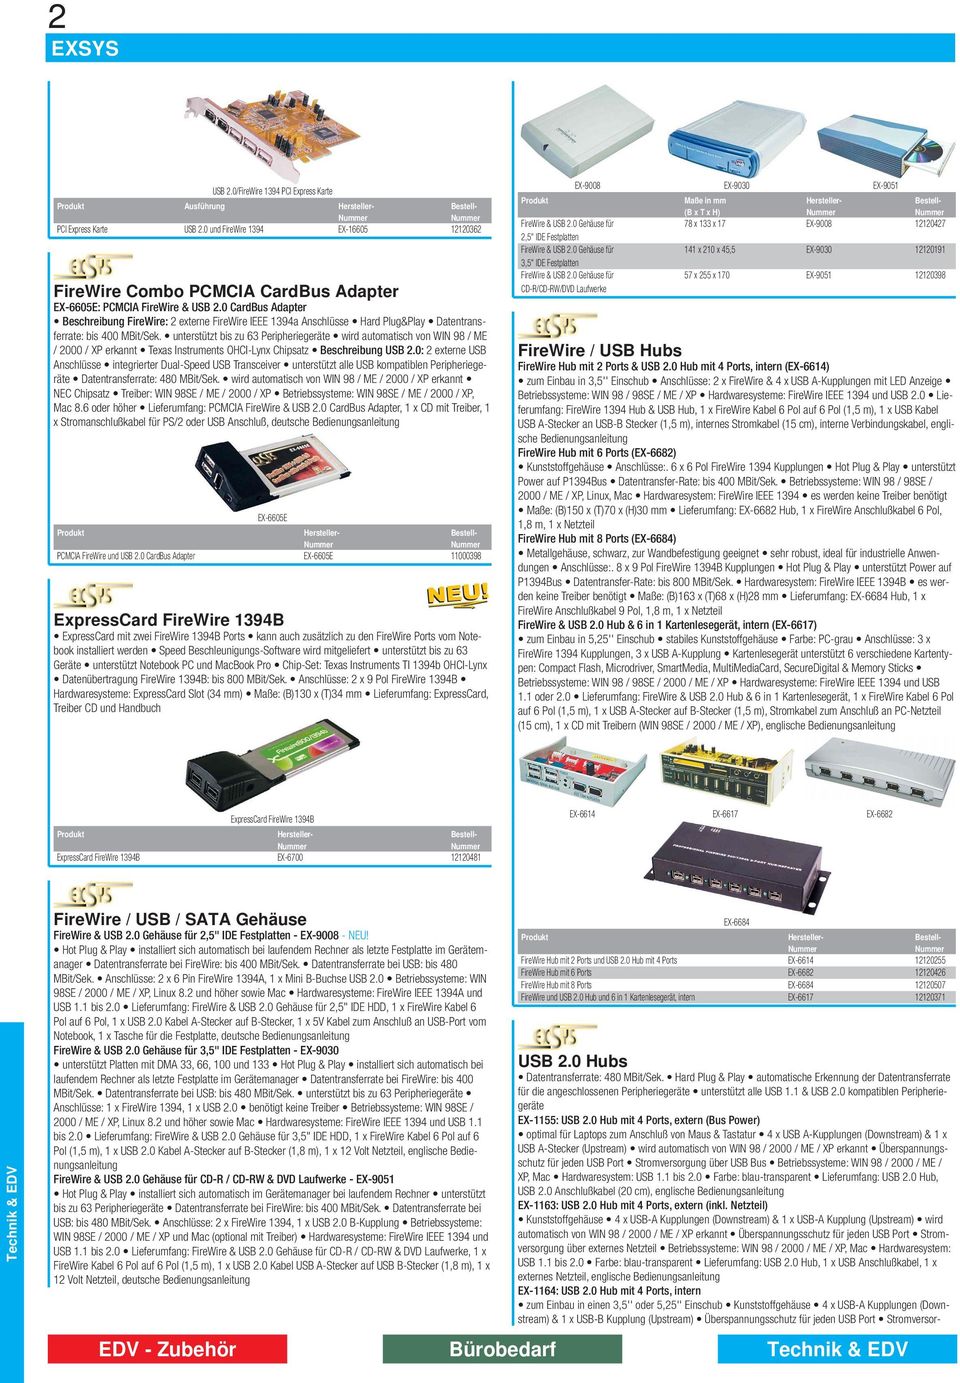 0 CardBus Adapter Beschreibung FireWire: 2 externe FireWire IEEE 1394a Anschlüsse Hard Plug&Play Datentransferrate: bis 400 MBit/Sek.